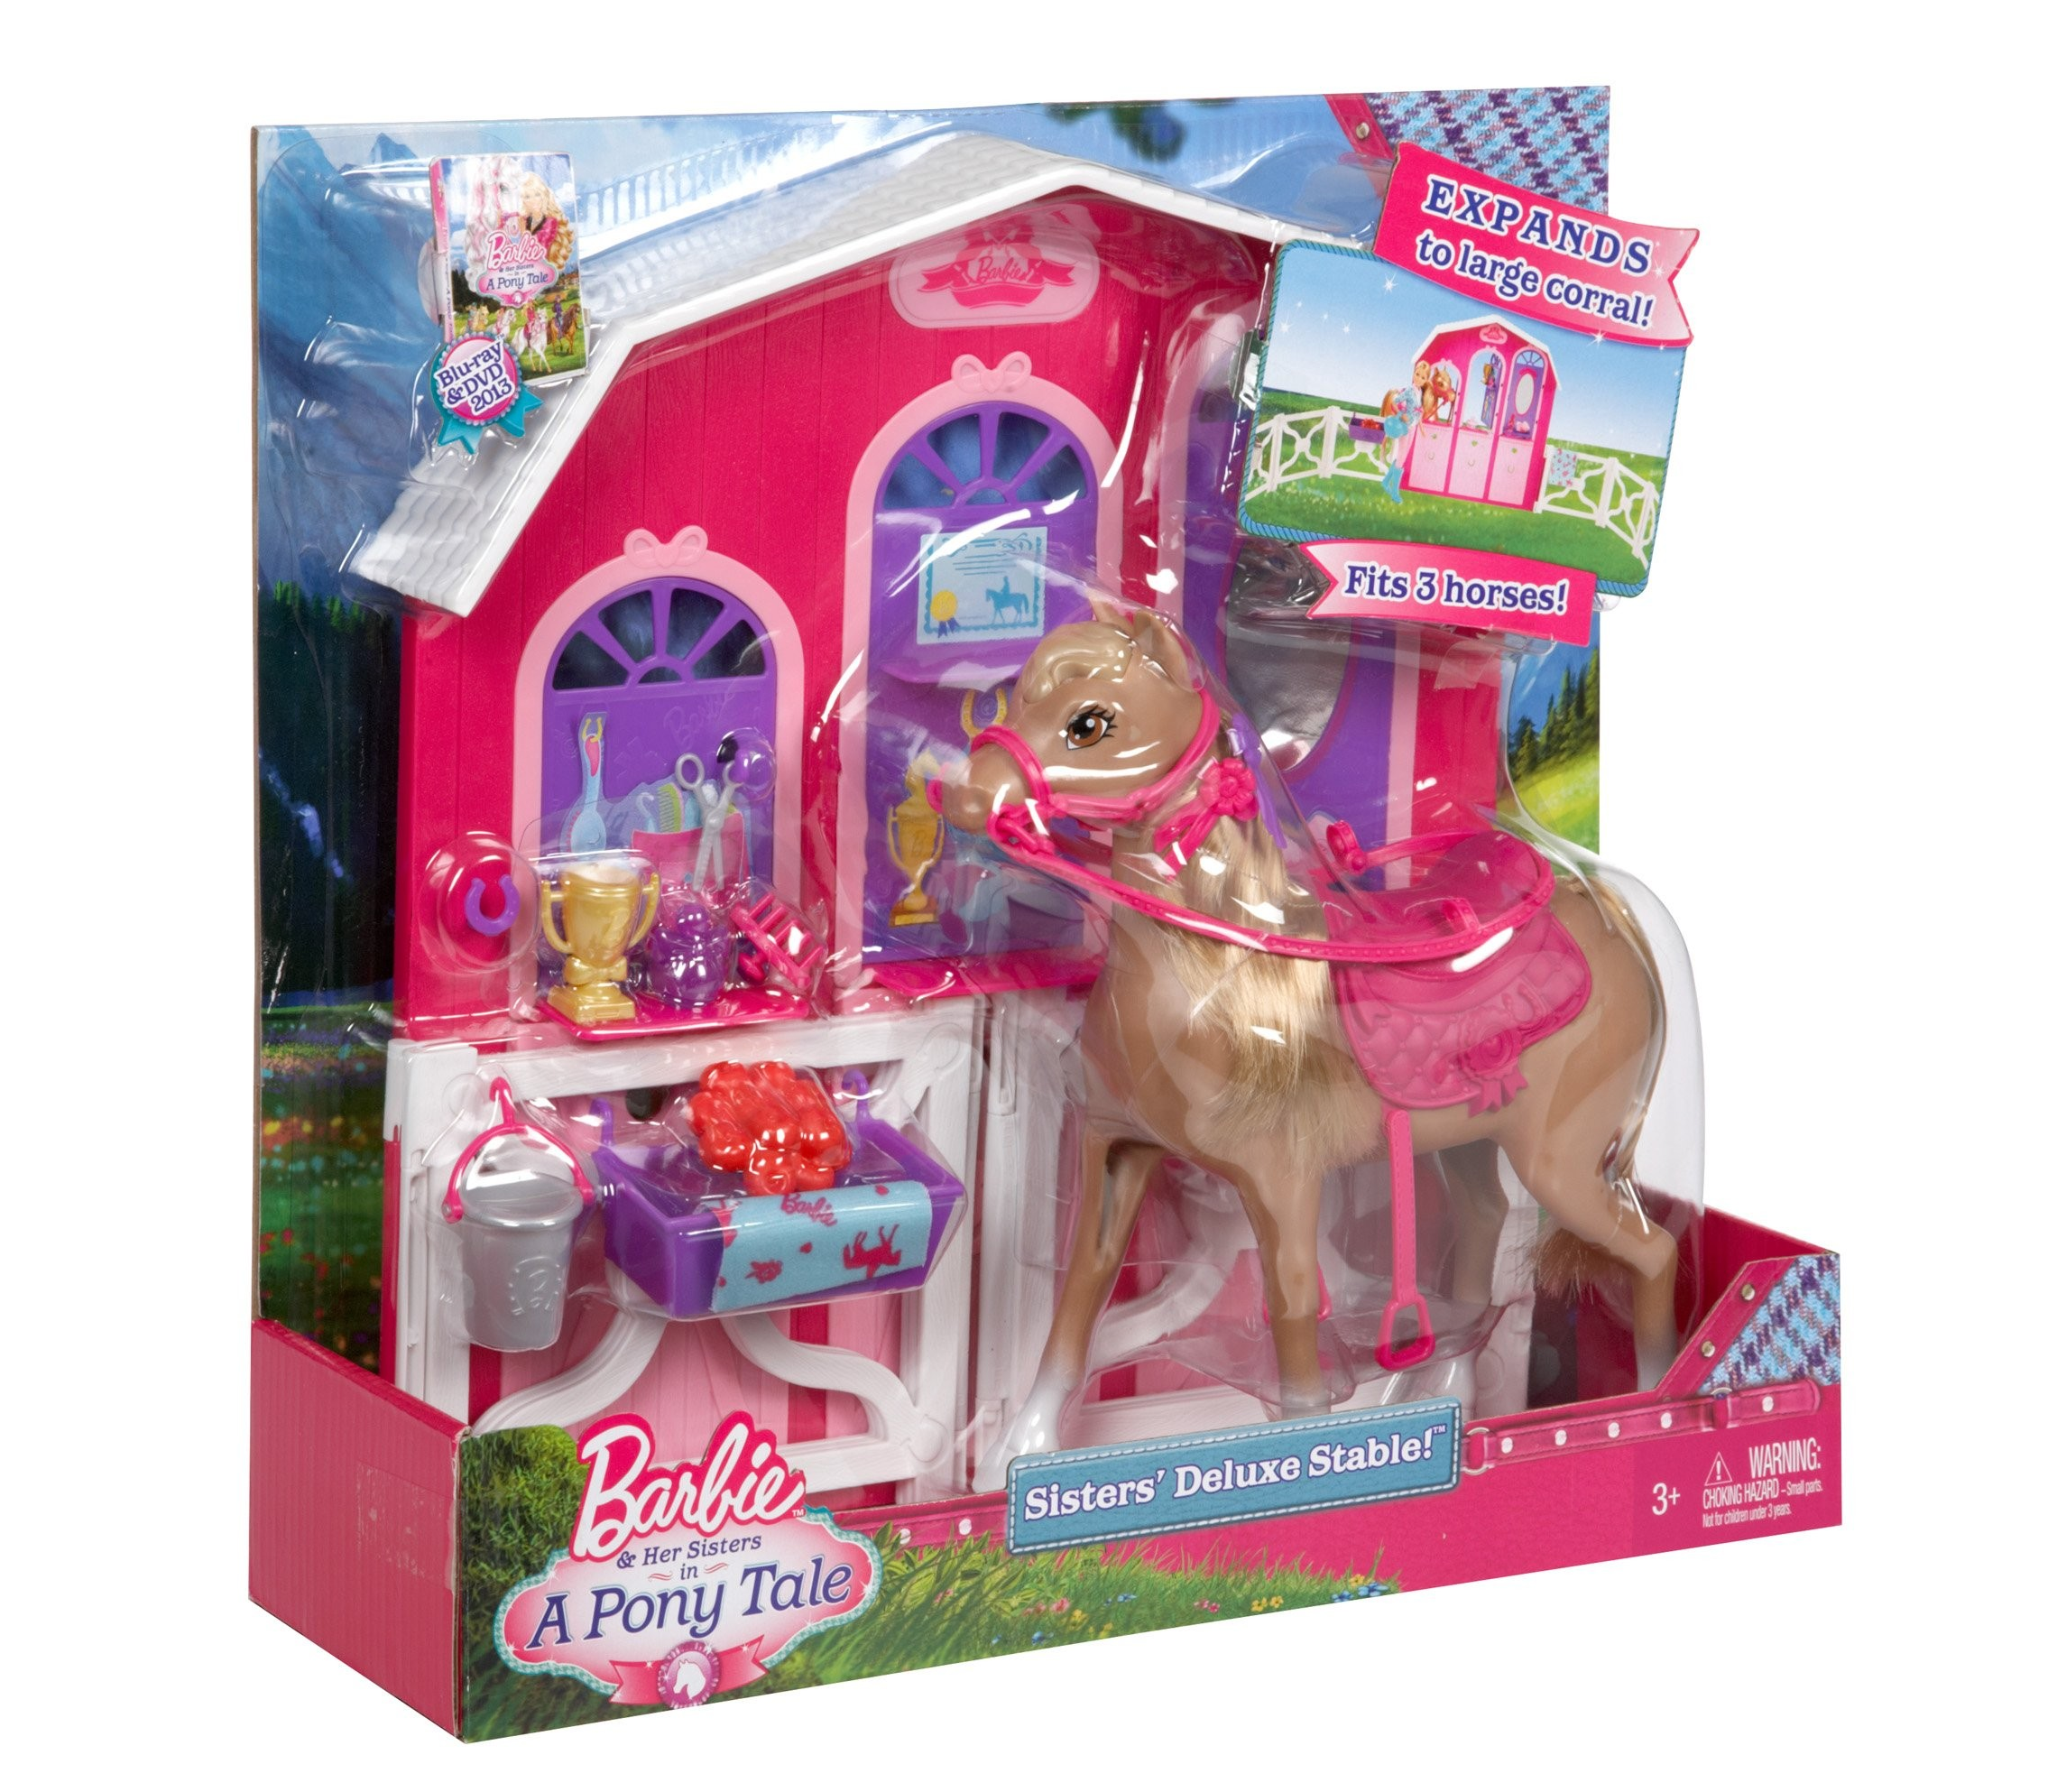 Барби набор конюшня. Barbie 7554 конюшня с лошадкой с м/ф "Барби в сказке о пони". Конюшня Барби с лошадьми. Барби с лошадкой поняшкой и конюшней. Конюшня пони